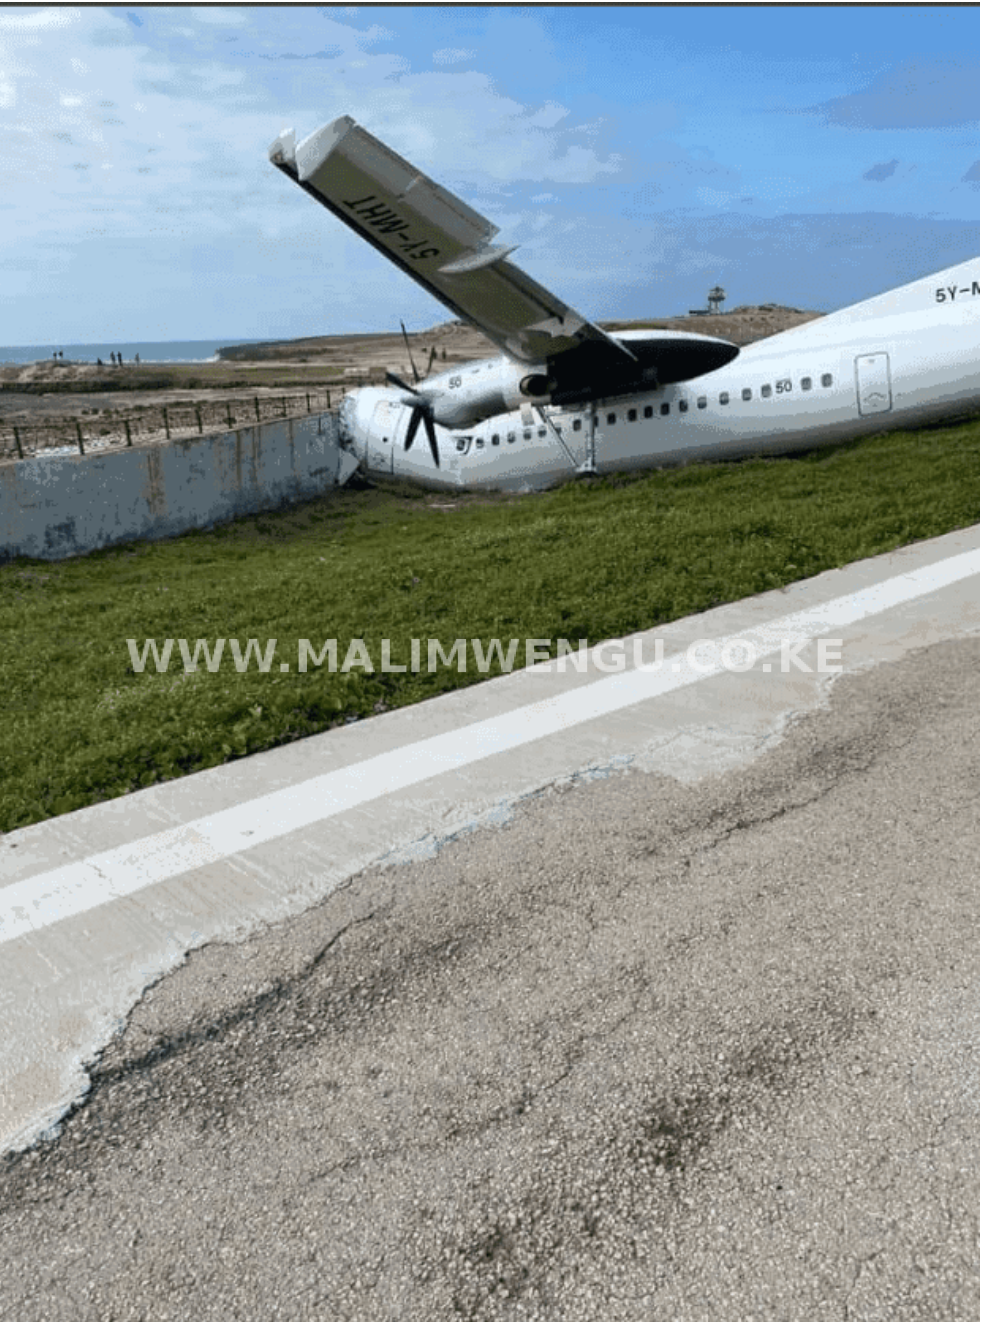 Siverstone cargo plane that crashed in Mogadishu